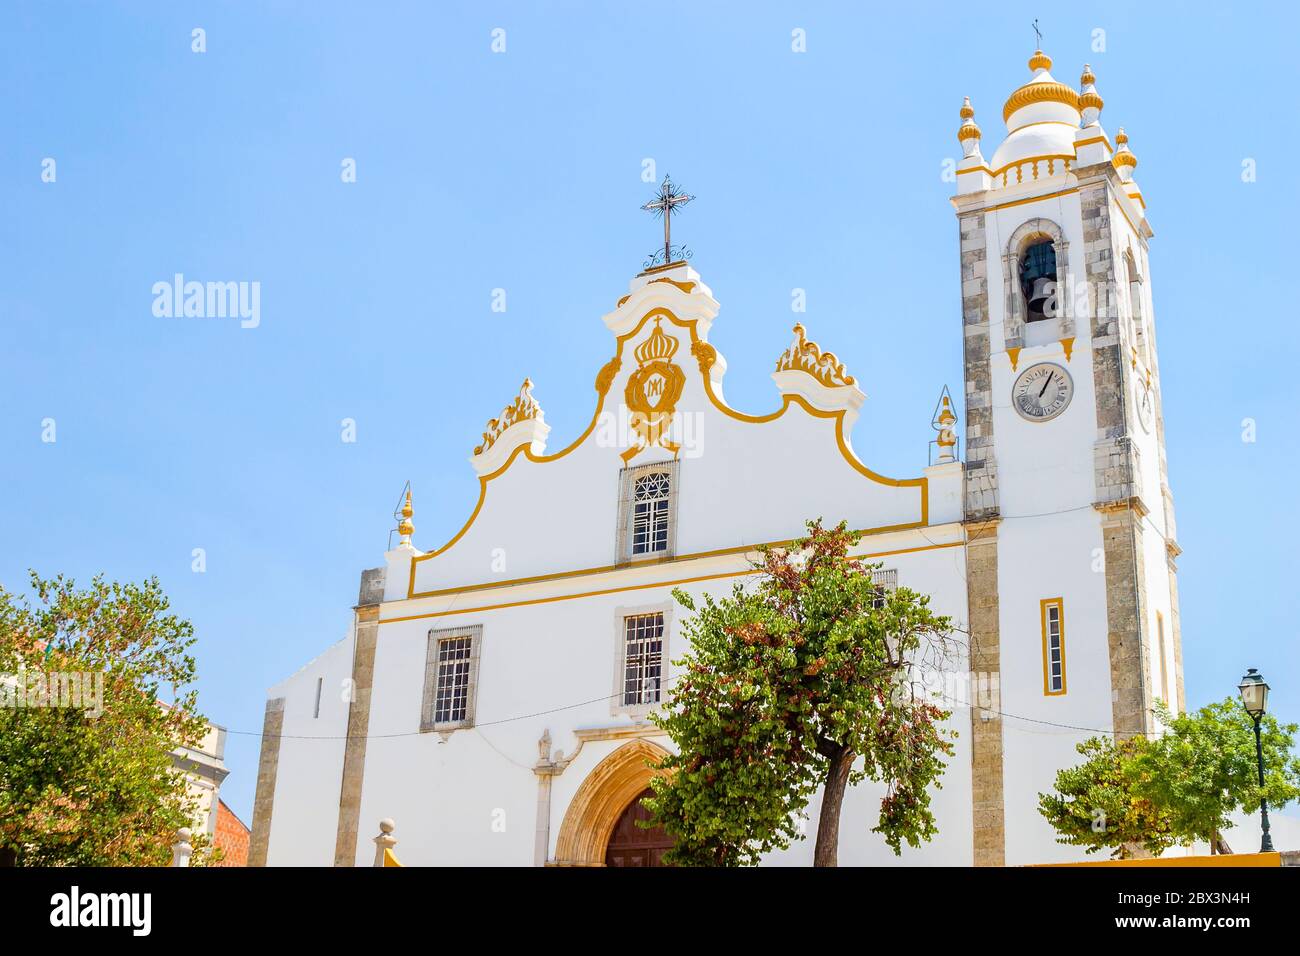 Facade of the historic 15th-century Catholic sanctuary, Igreja de Nossa Senhora da Conceicao church, Portimao, western Algarve, south Portugal Stock Photo